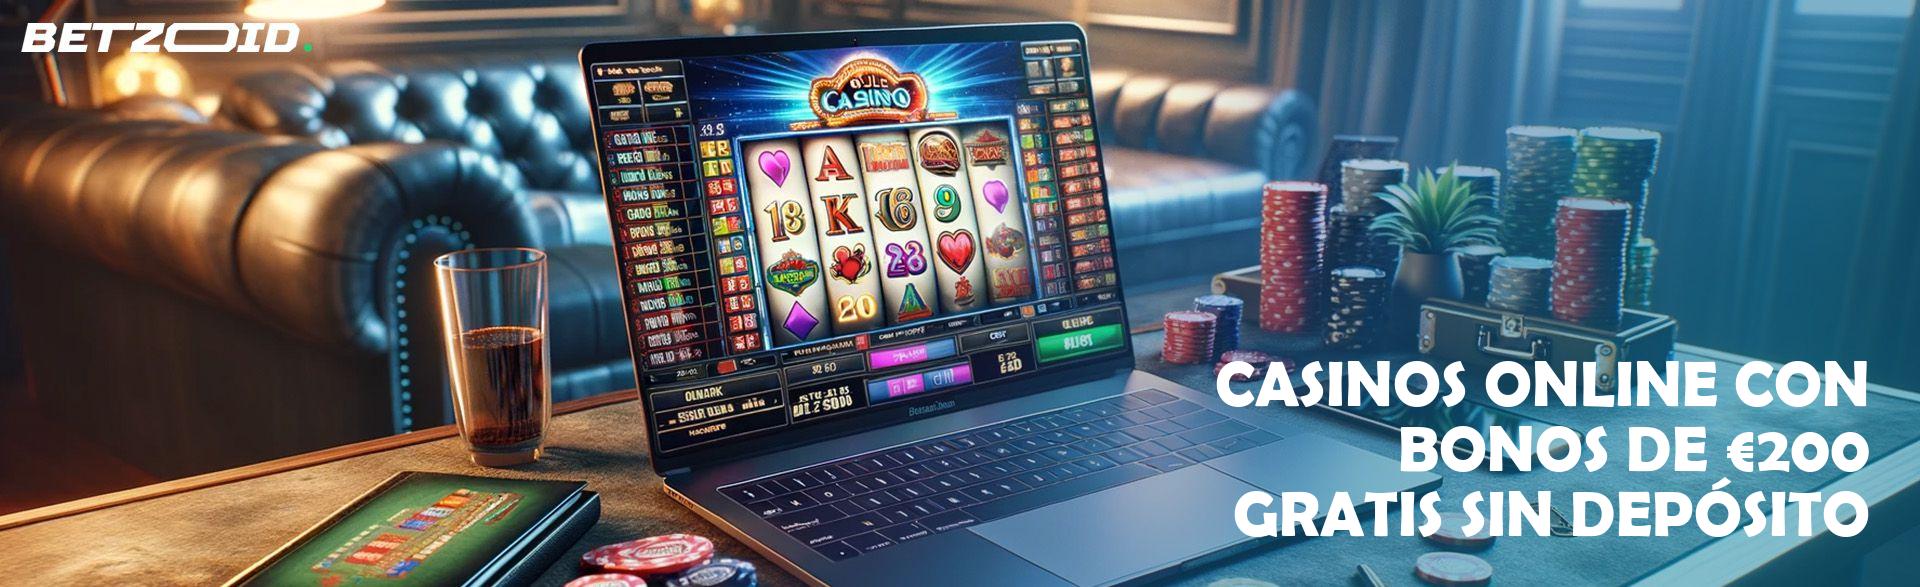 Casinos Online con Bonos De €200 Gratis sin Depósito.